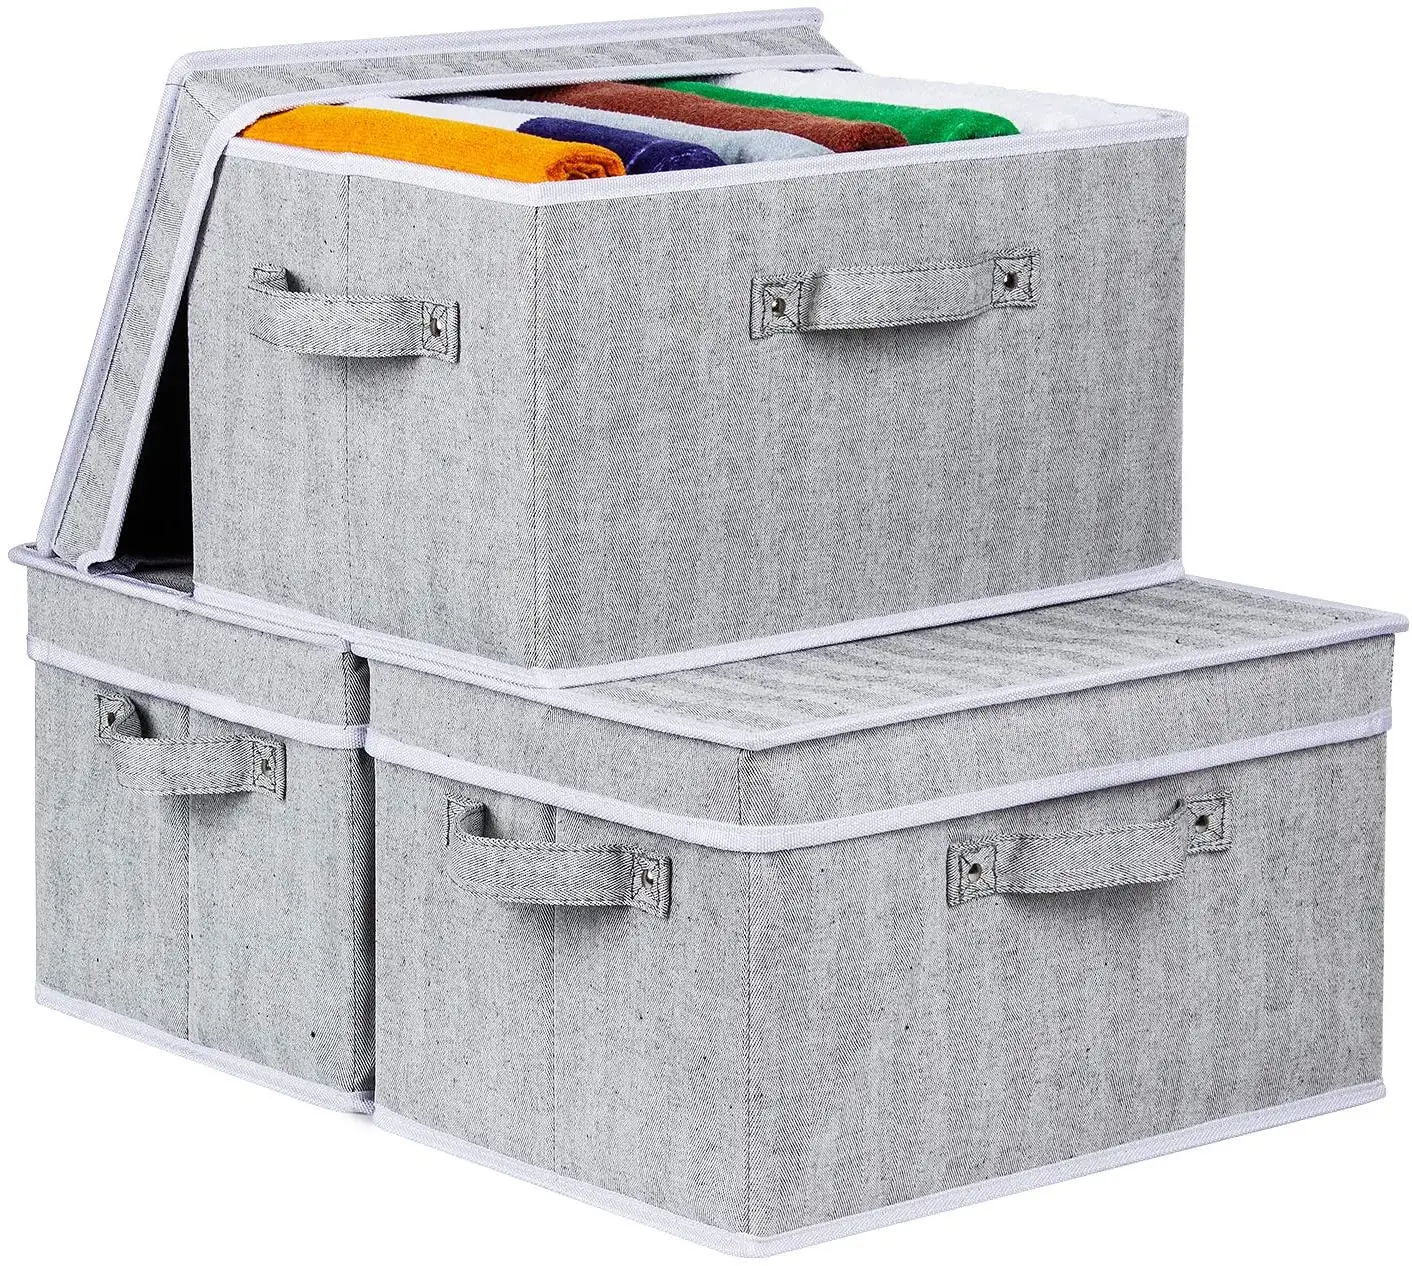 Di alta Qualità Pieghevole Tessuto Dei Vestiti Cube Antipolvere Riutilizzabile Storage Box Per La Casa Organizzatore